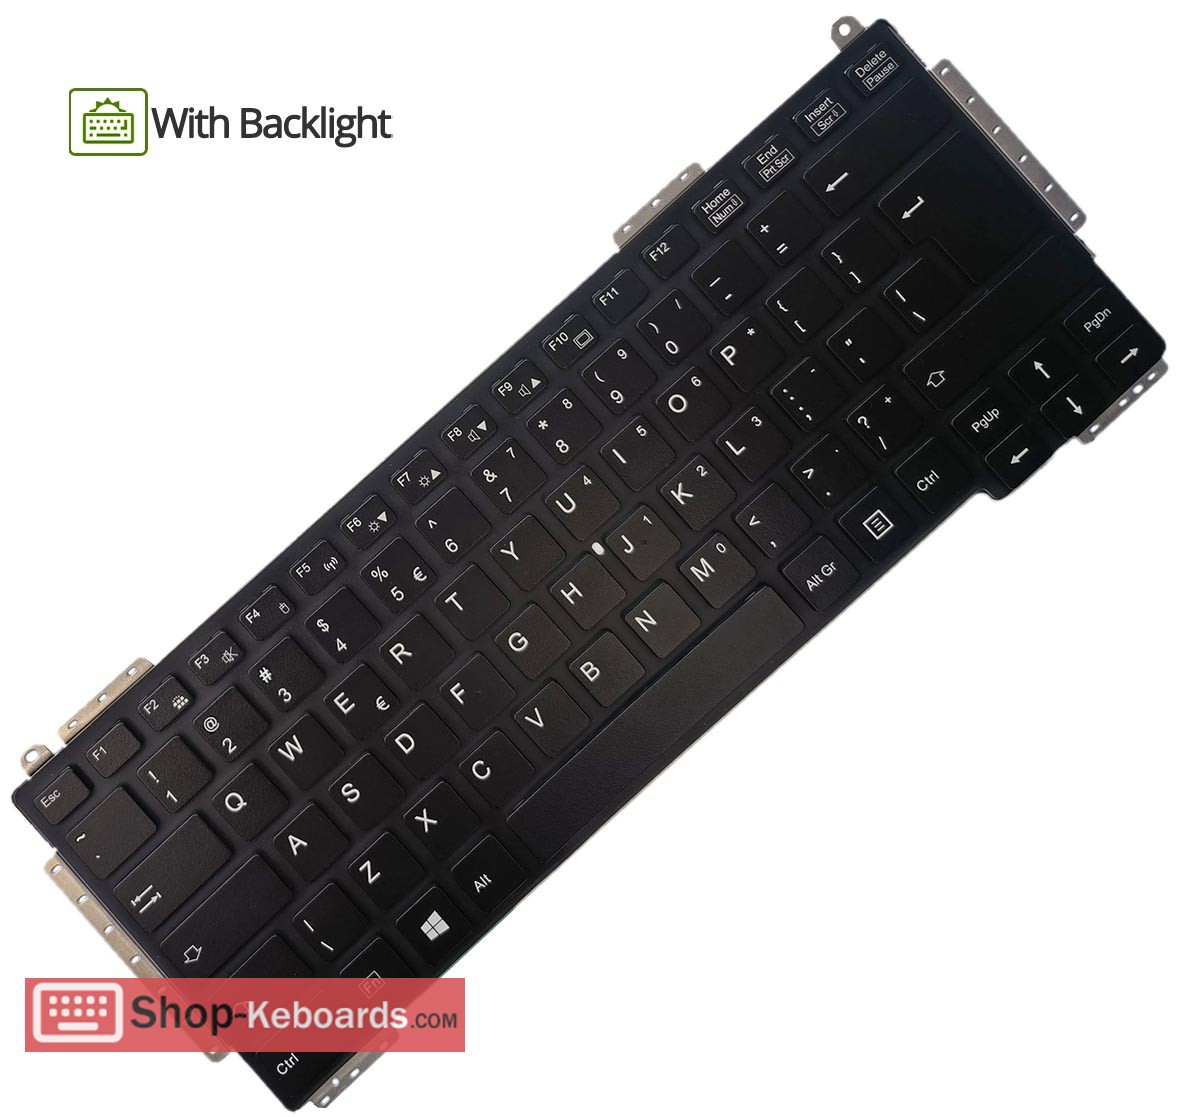 Fujitsu S935-PB723  Keyboard replacement